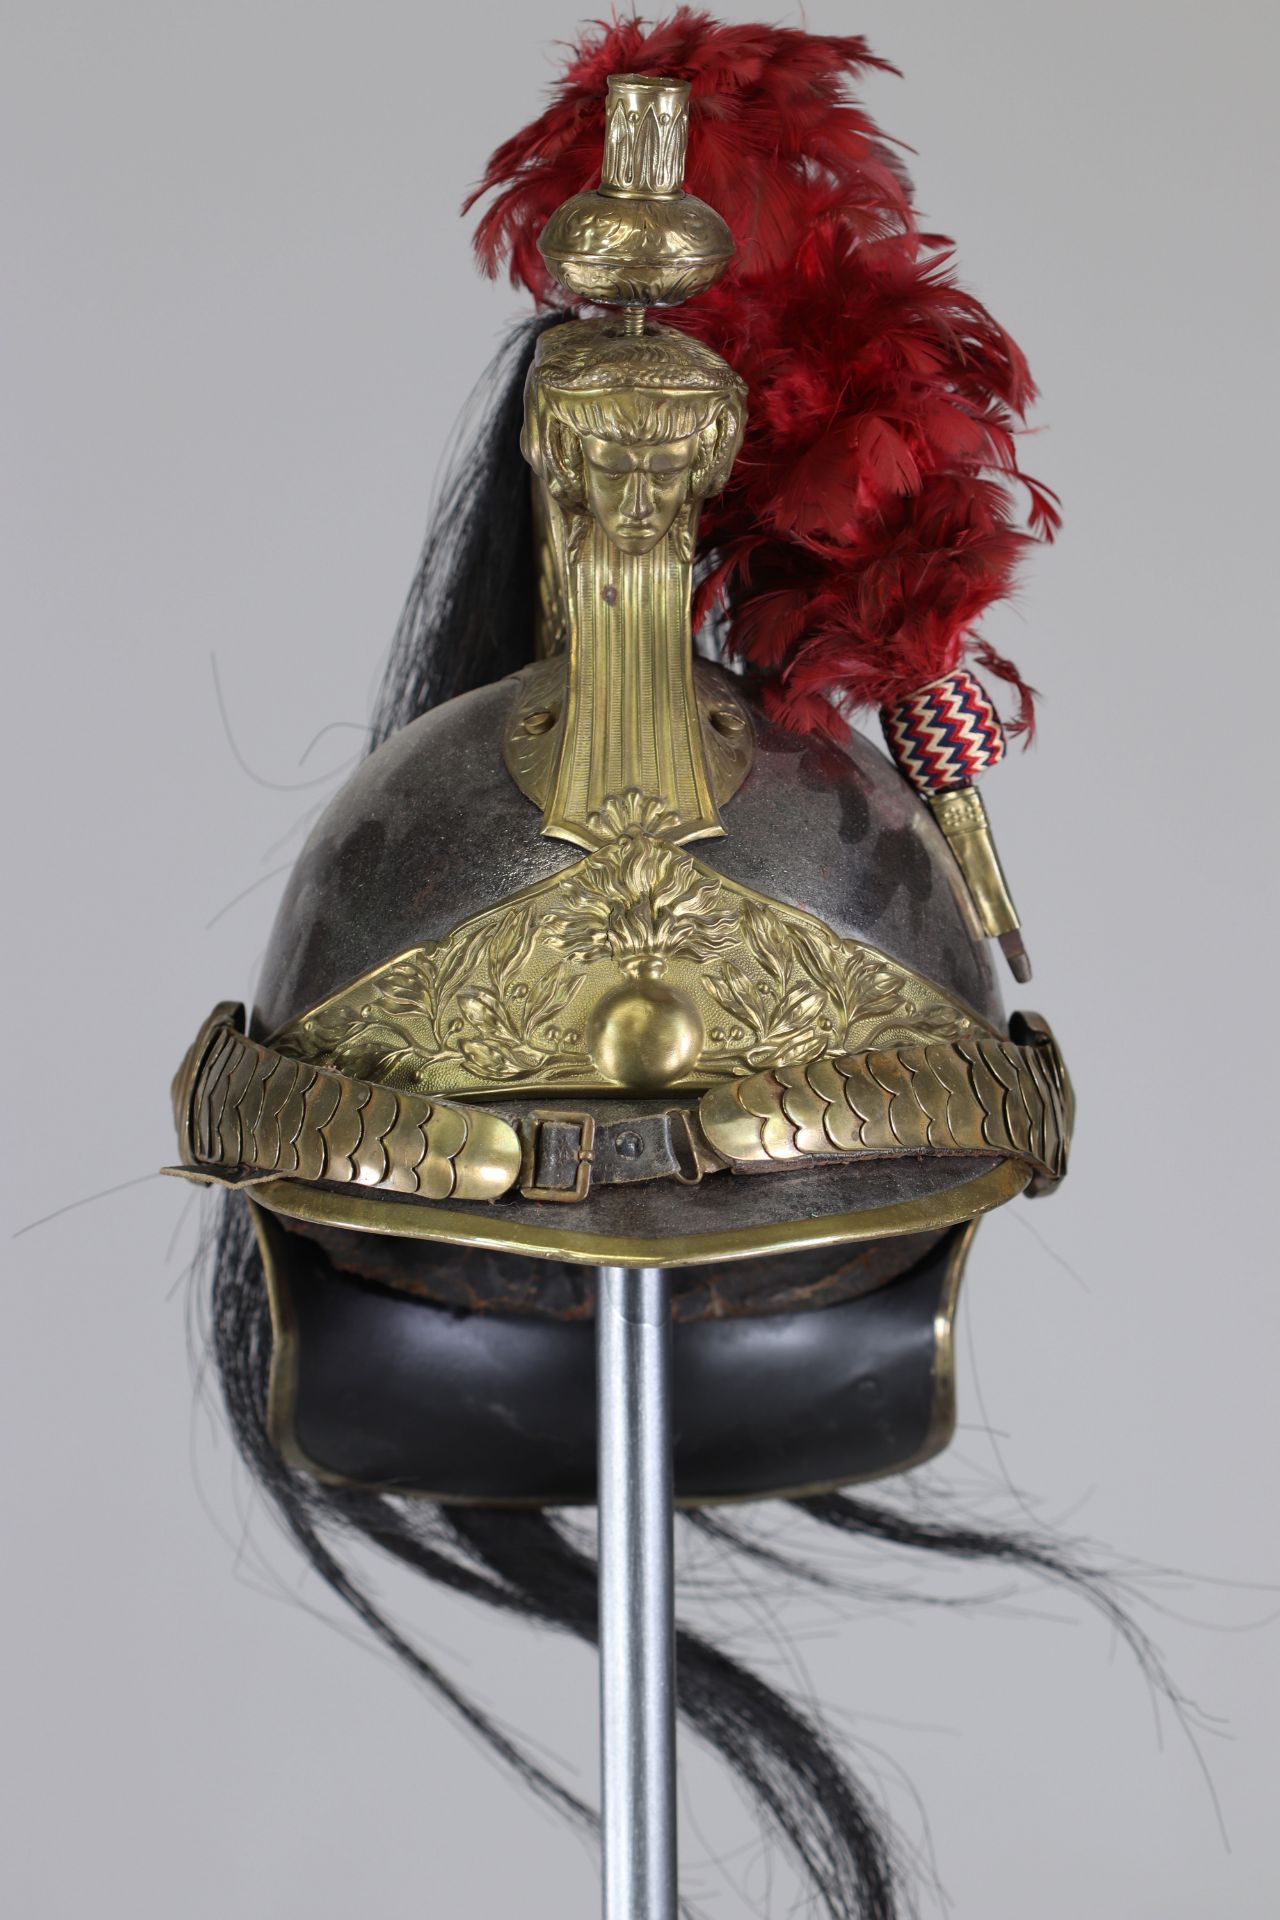 Model 1874 cuirassier officer's helmet